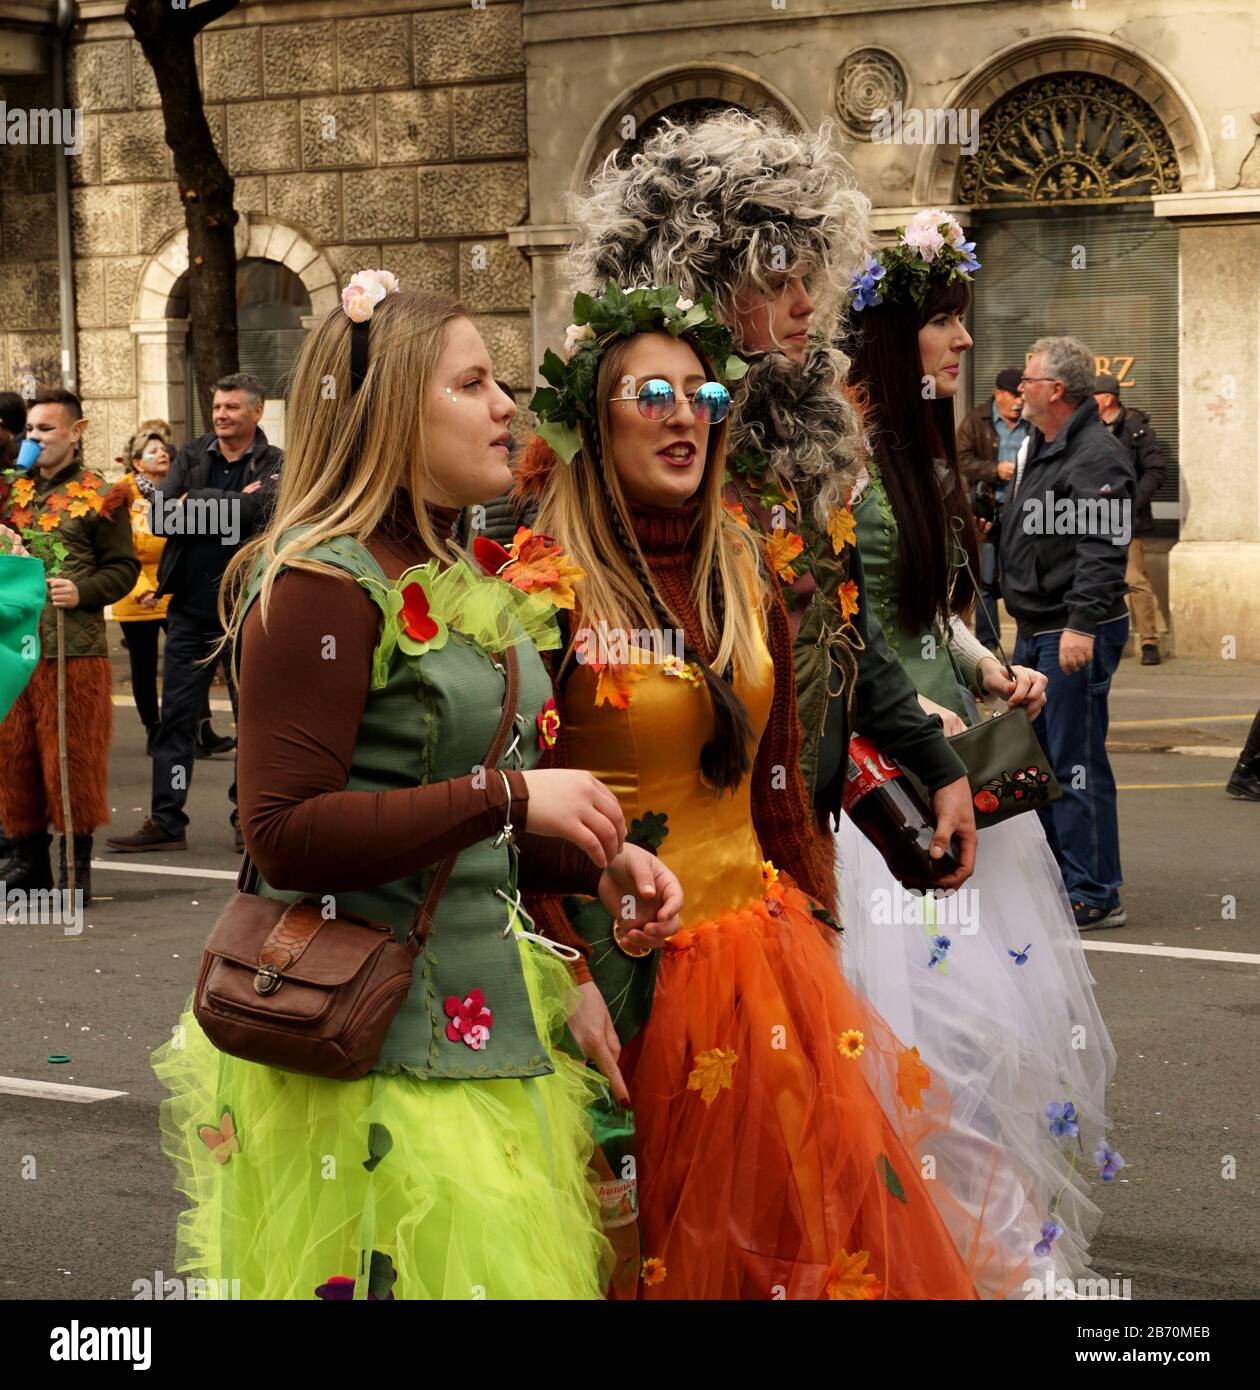 Rijeka, Kroatien, 23. Februar 2020. Mädchen kostümierten sich in buntem  Kostüm von Märchen, die während des Karnevals und des fröhlichen Chattens  die Straße hinunterspazieren Stockfotografie - Alamy